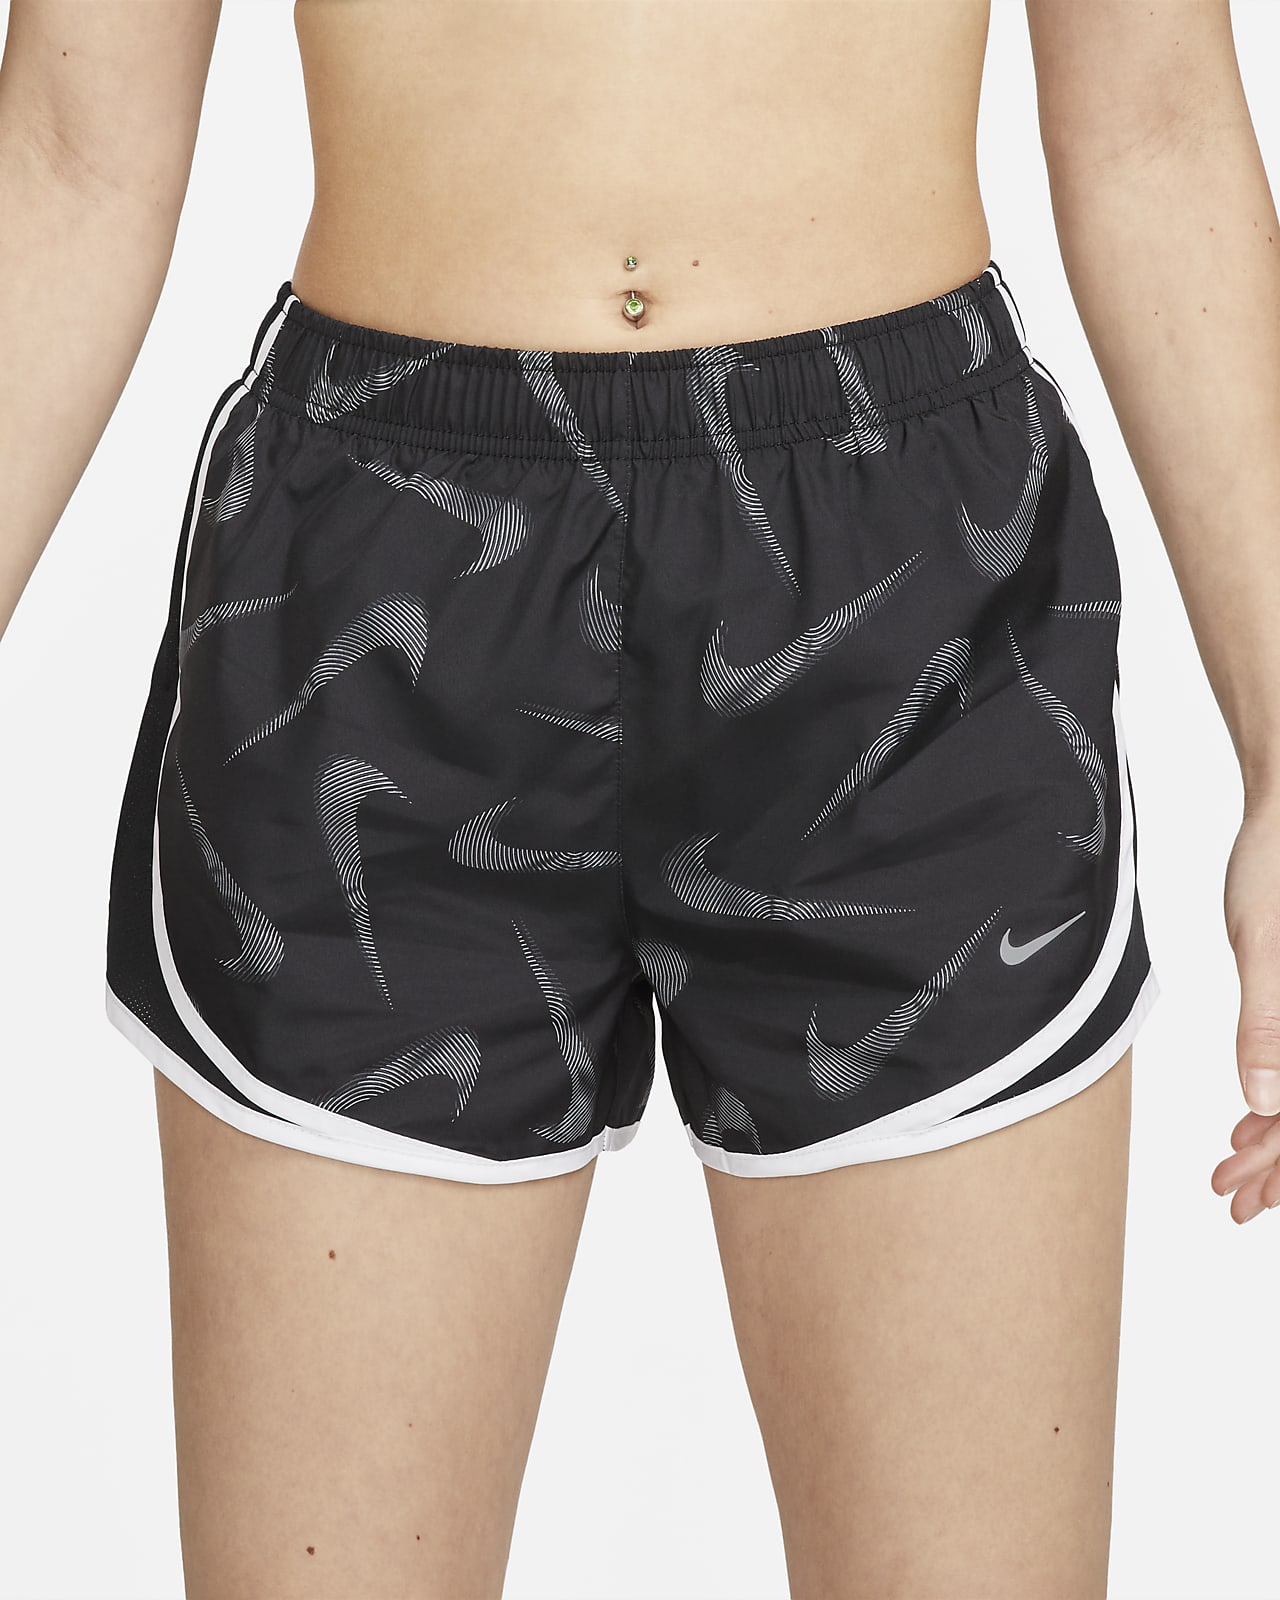 Nike Women's Tempo Running Shorts $ 30